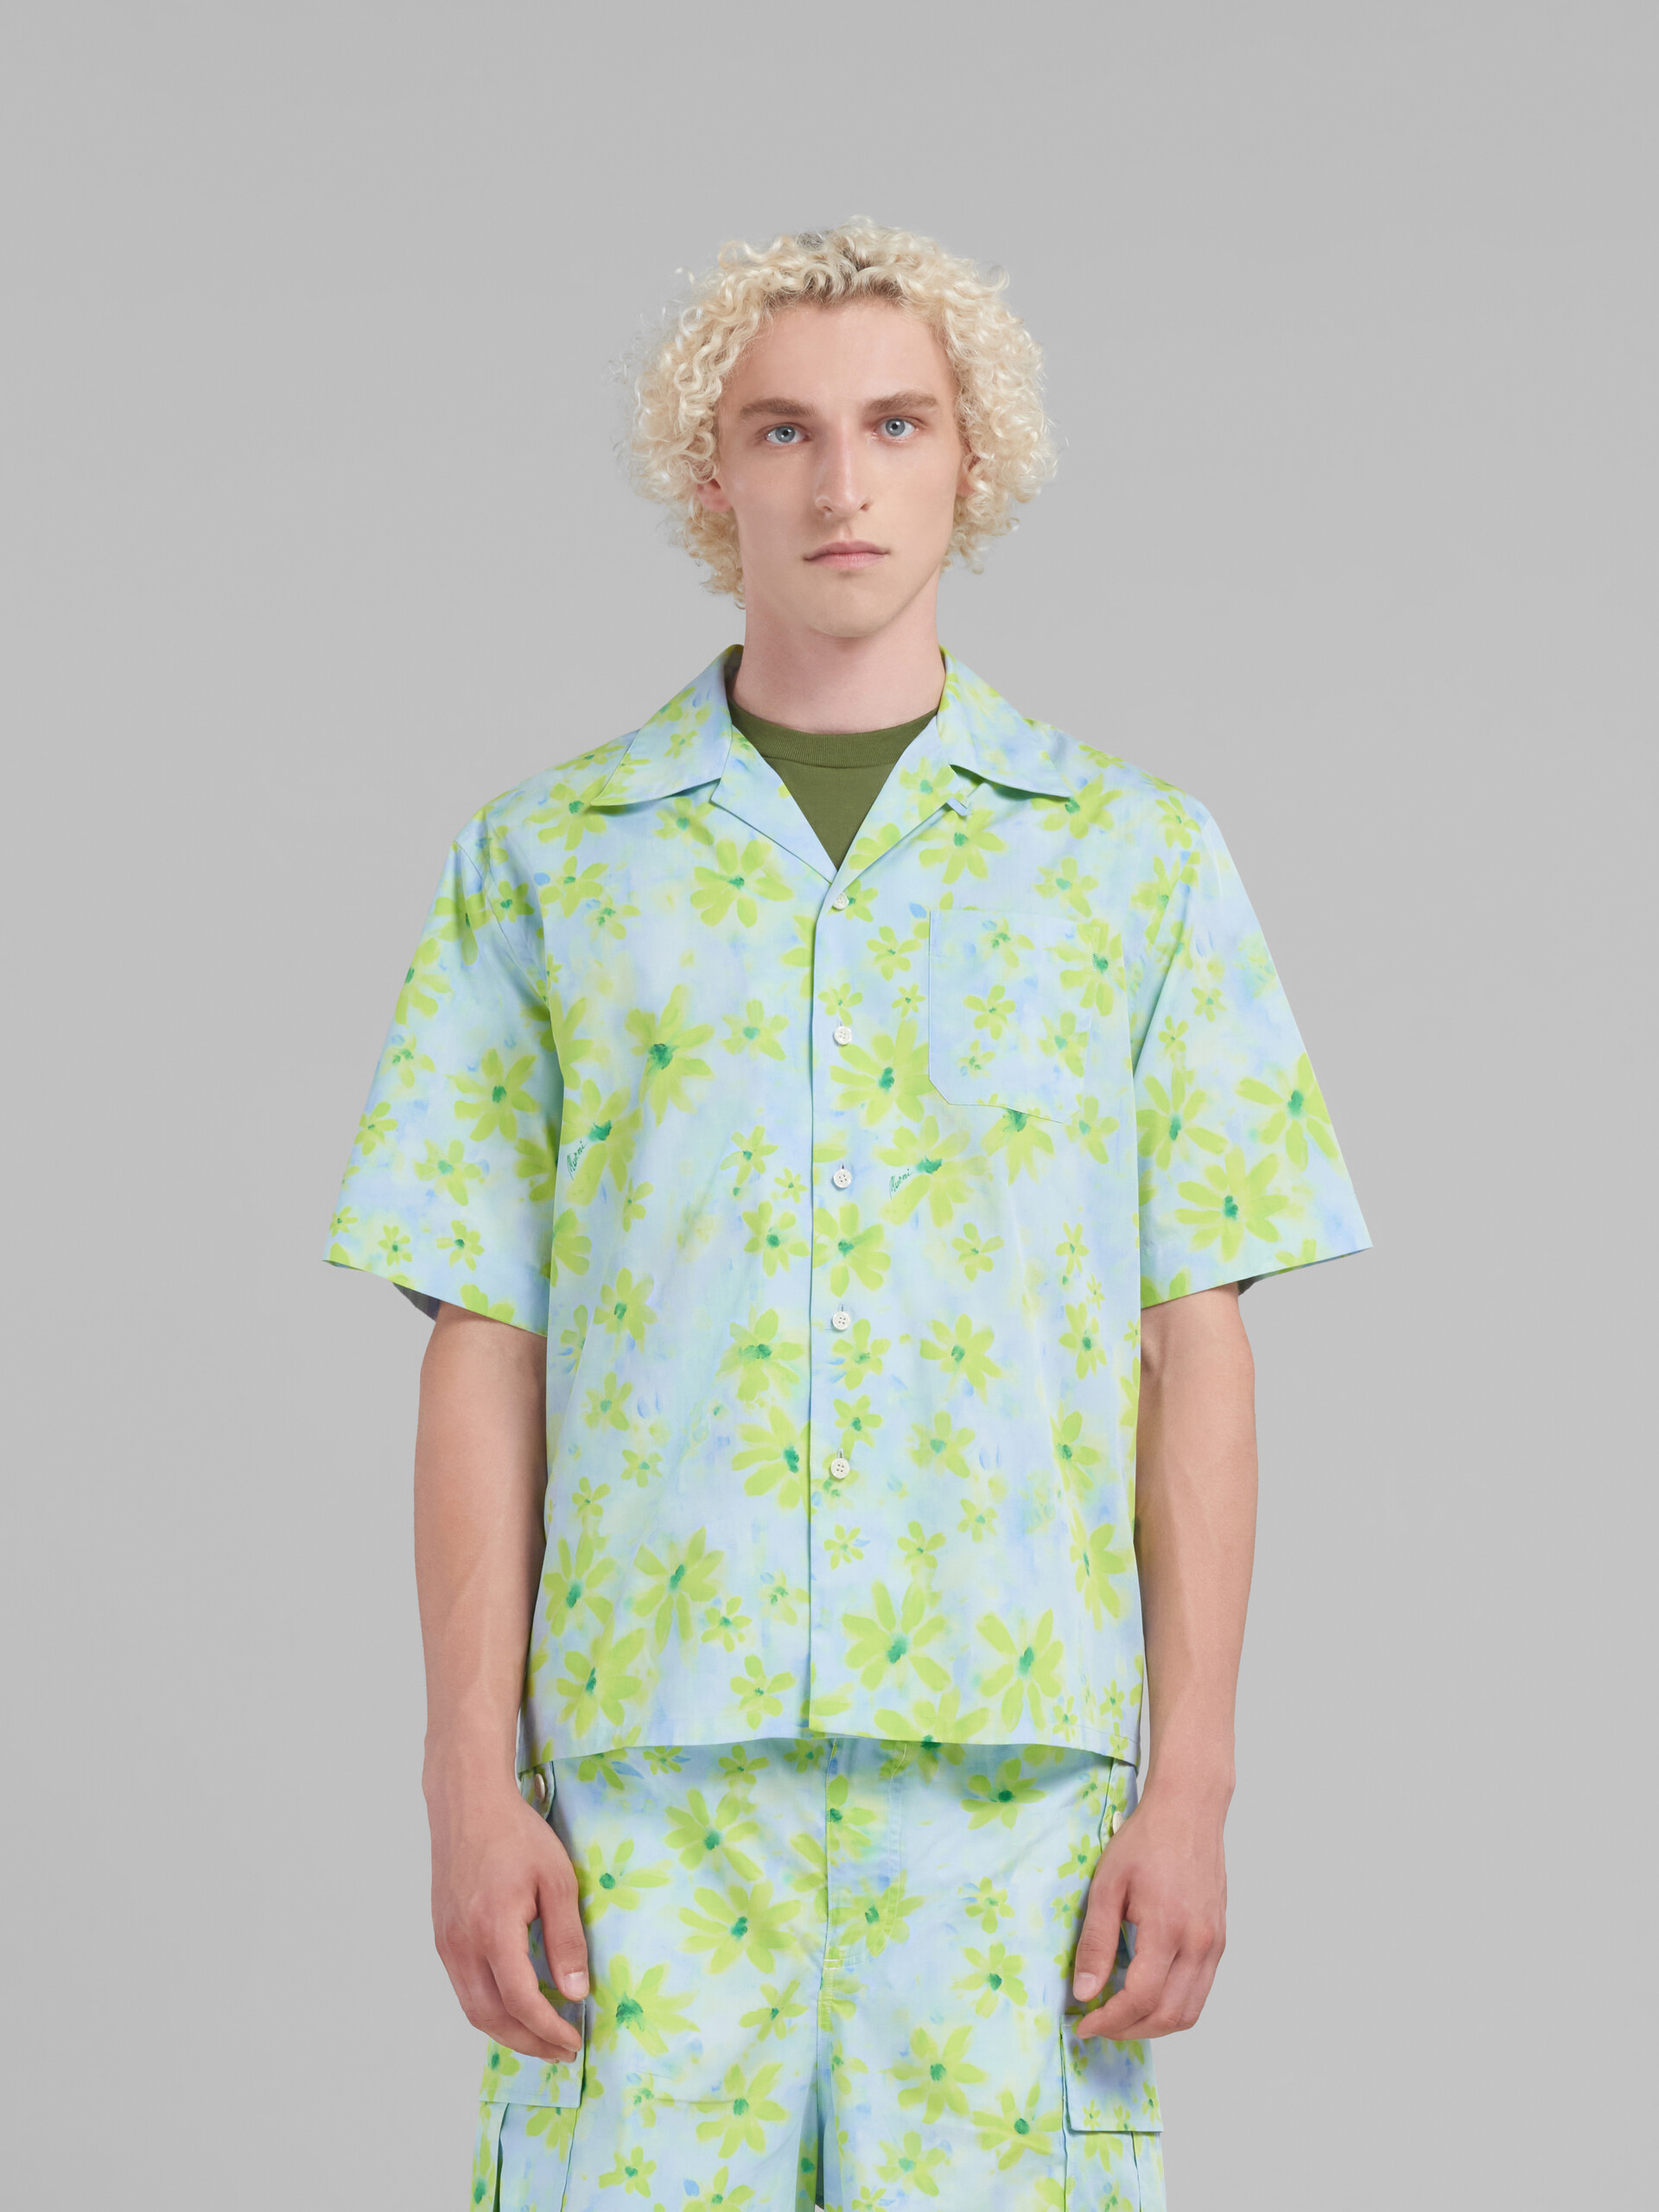 ライトグリーン Paradeプリント入り ポプリン製 ボーリングシャツ - シャツ - Image 2